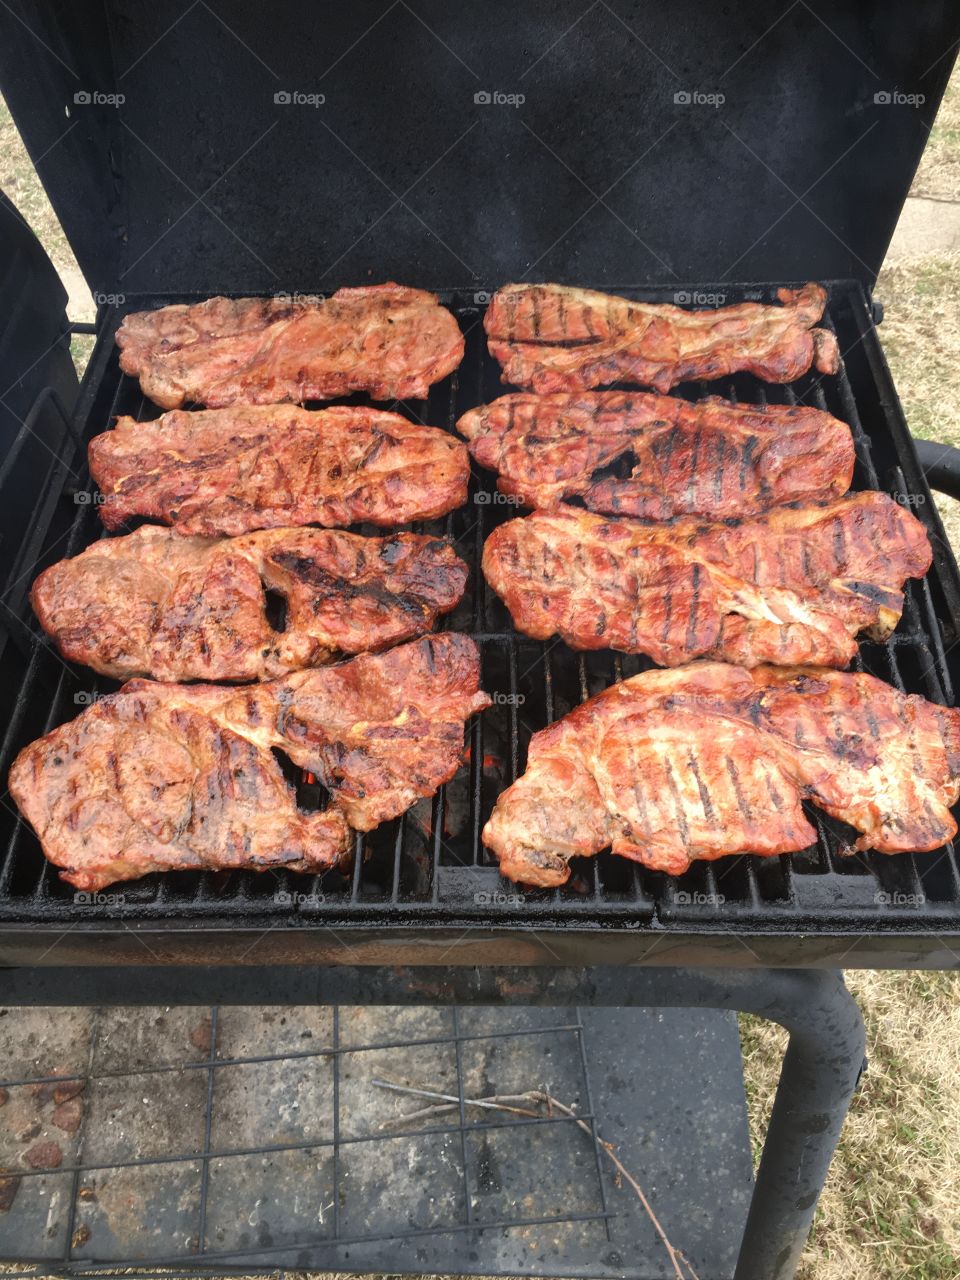 Kansas pork 